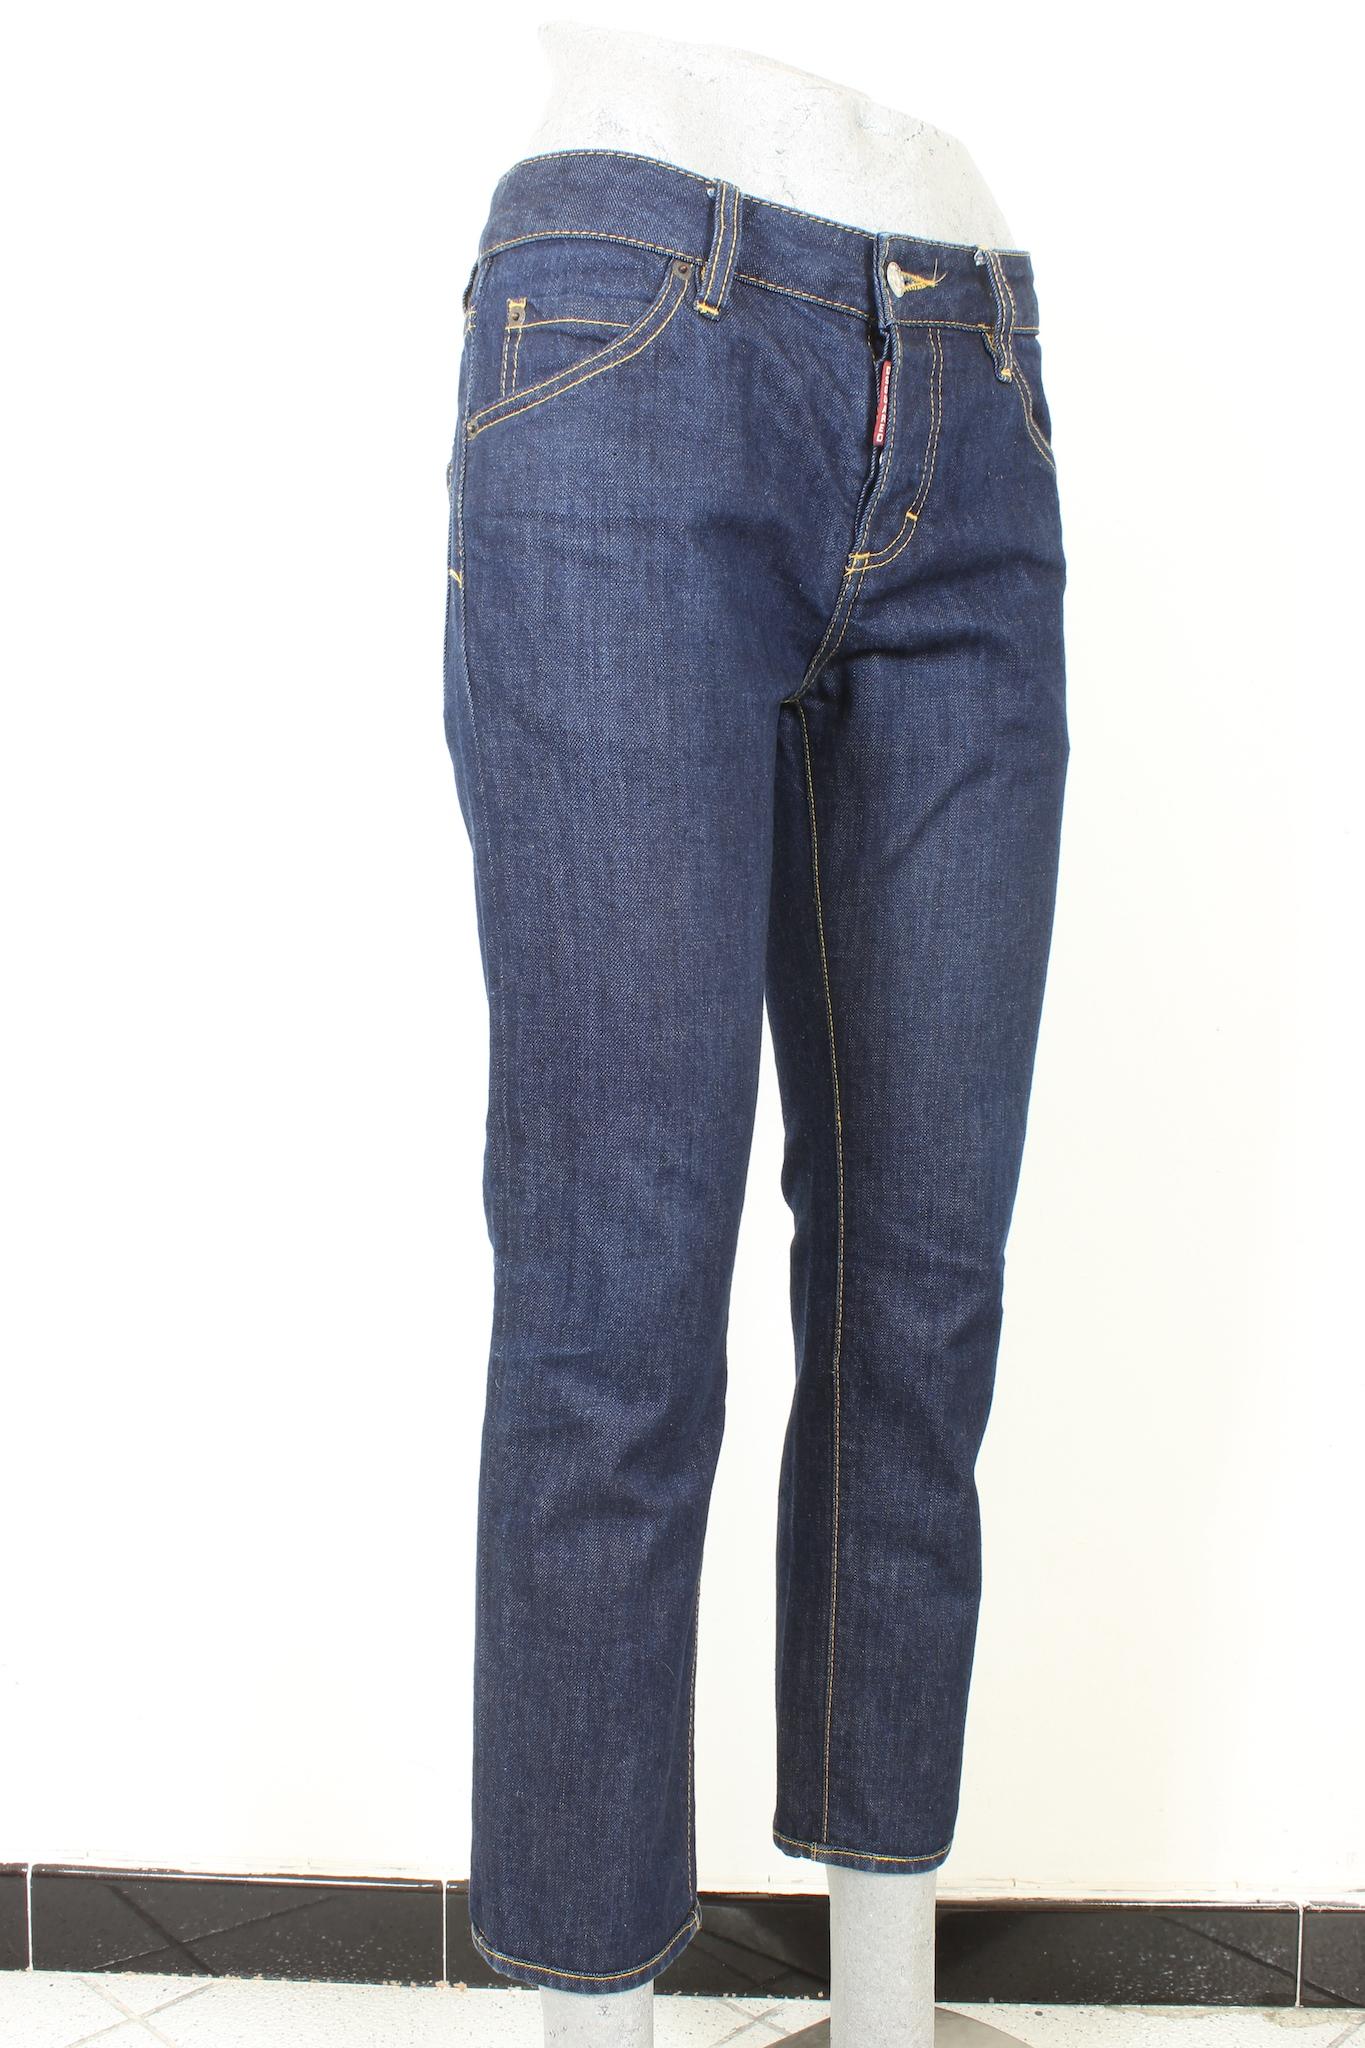 Klassische 2000er-Jeans von Dsquared. Gerades Modell, niedrige Taille, blaue Farbe aus Baumwolle. Hergestellt in Italien.

Größe: 40 IT 6 US 8 UK

Taille: 41 cm
Länge: 92 cm
Saum: 15 cm
Innere Länge: 66 cm